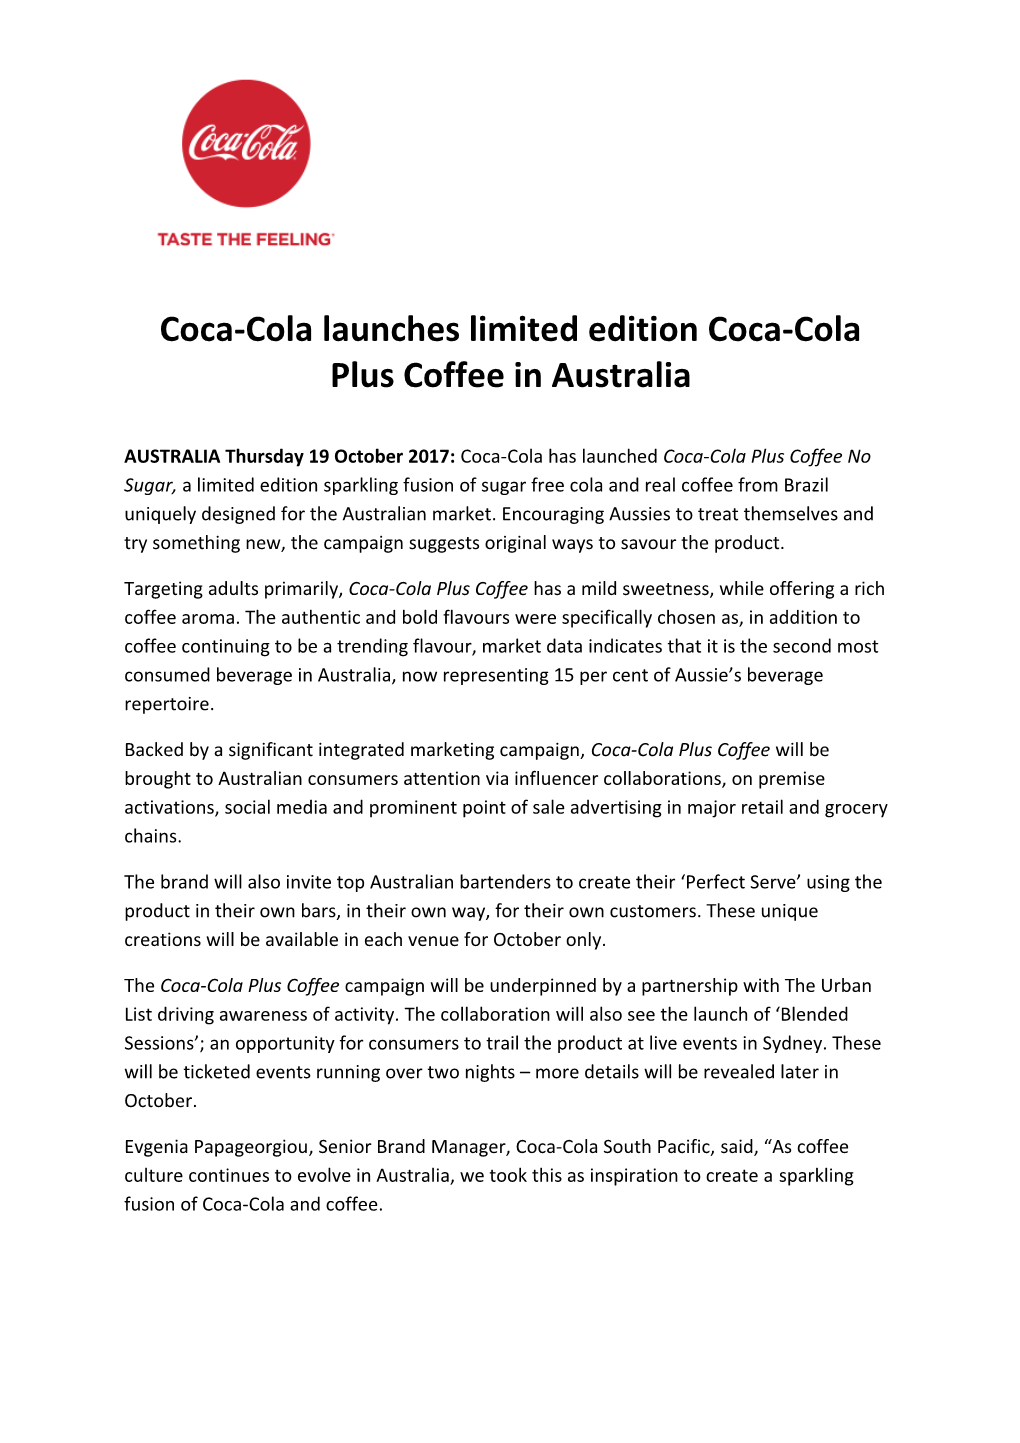 Coca-Cola Launches Limited Edition Coca-Cola Plus Coffee in Australia